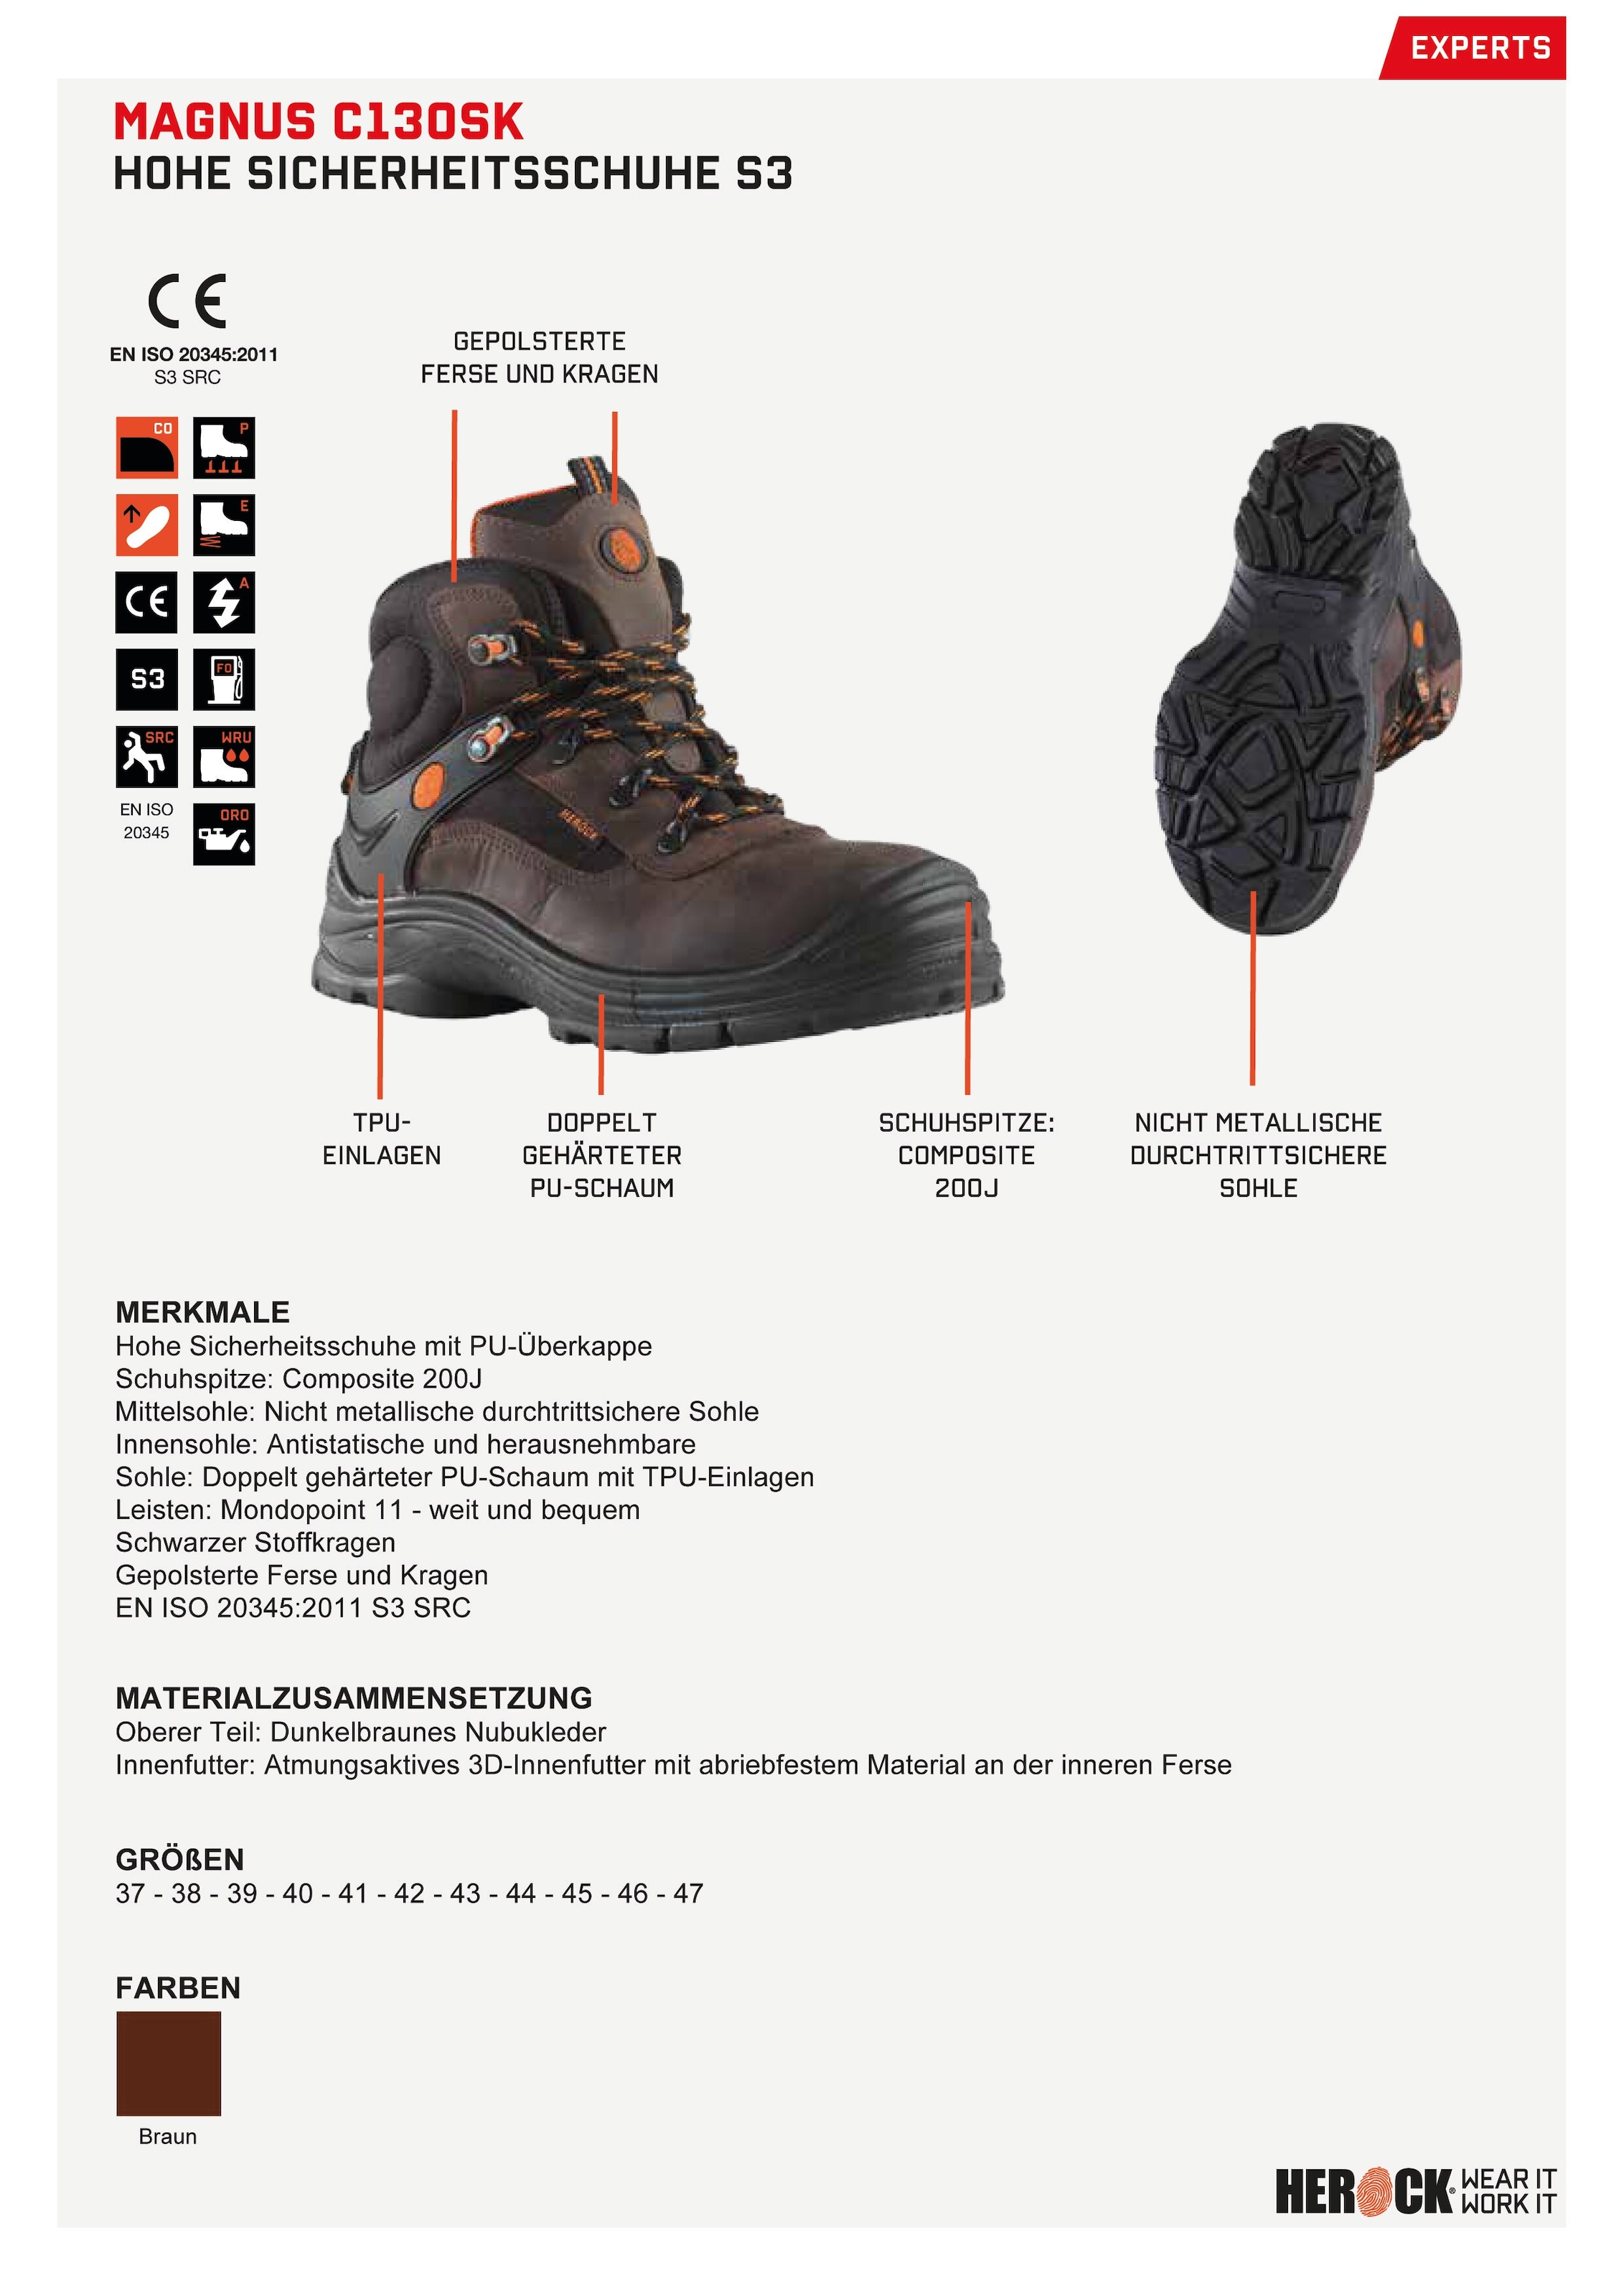 Herock Sicherheitsschuh »Magnus High Compo Klasse Leder, bestellen durchtrittsicher, weit, online Echtes S3 Schuhe«, nicht-metallisch, S3